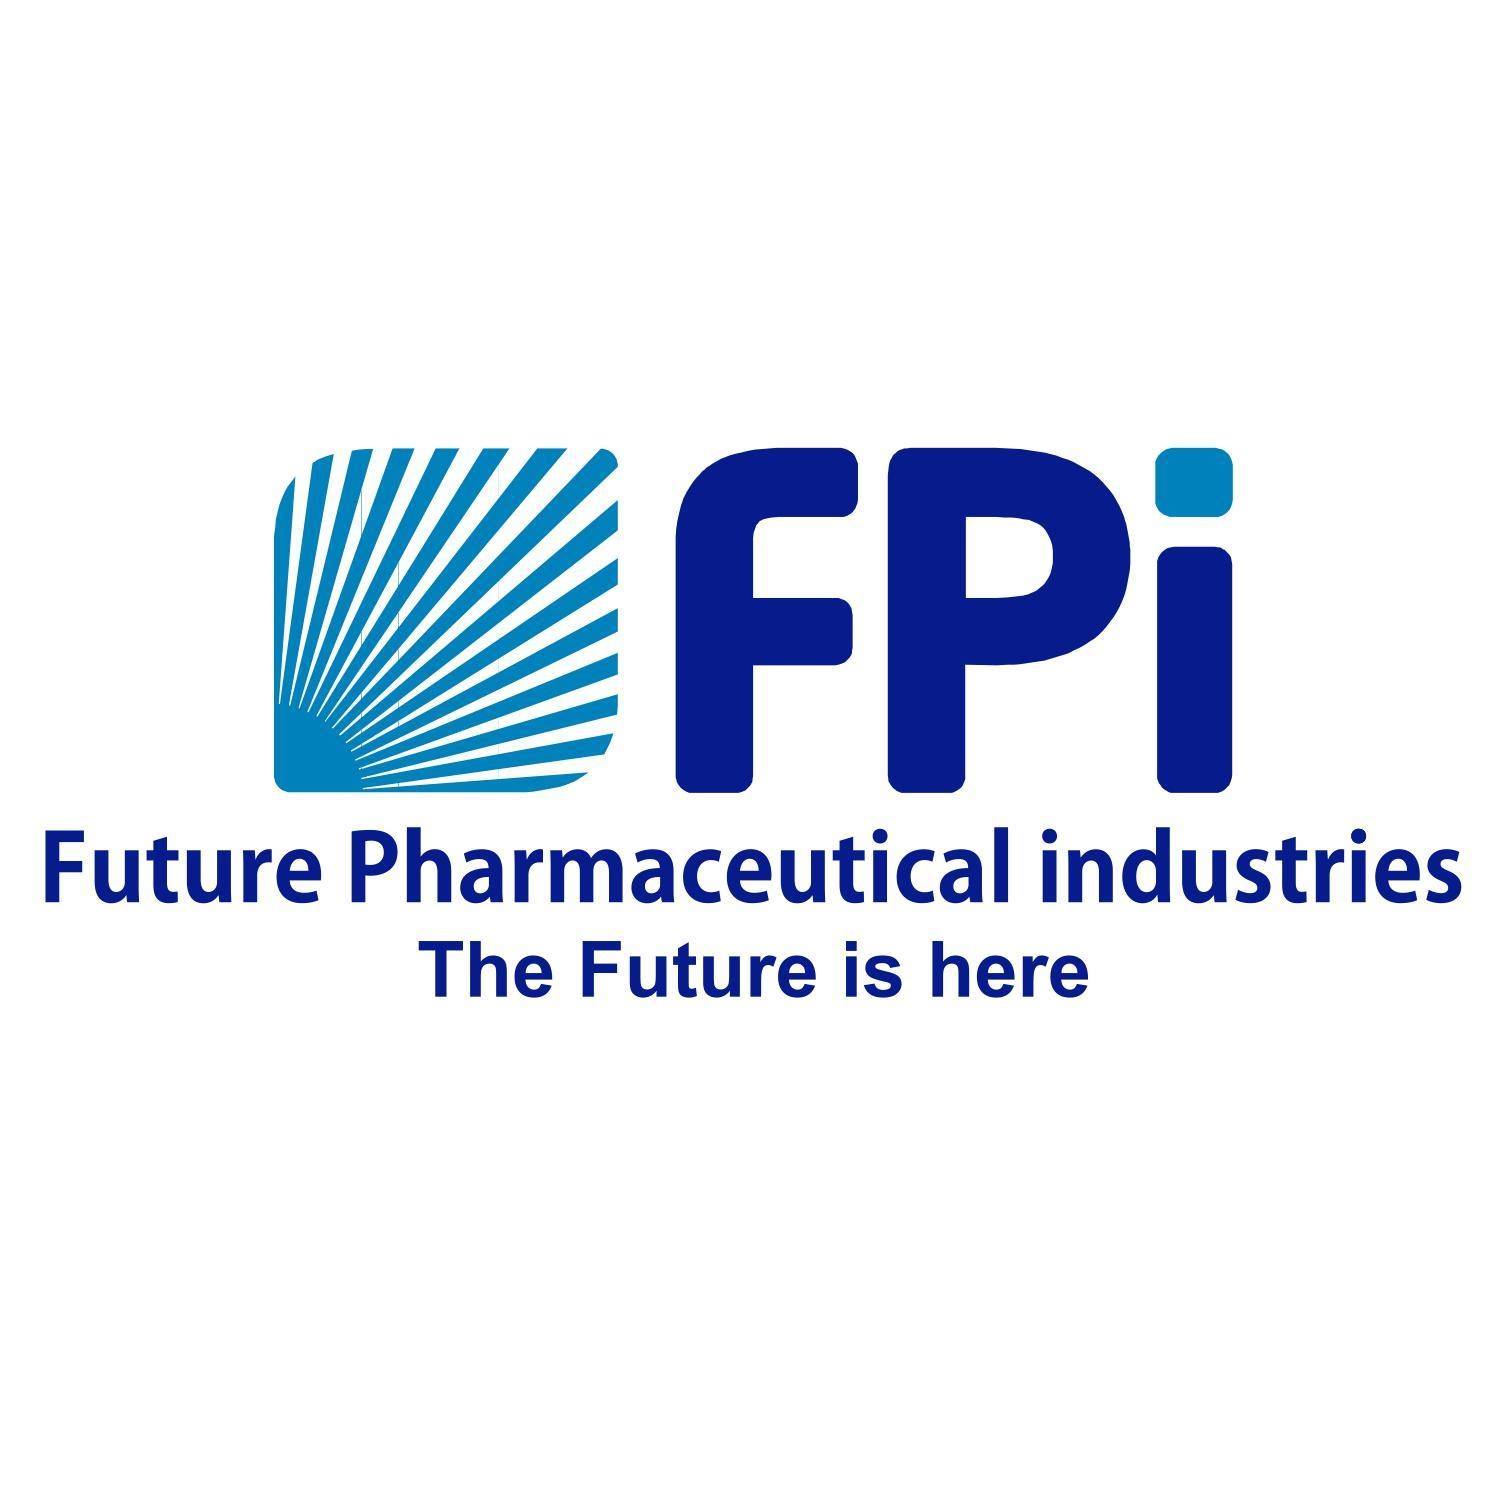 FPi-Future Pharmaceutical industries